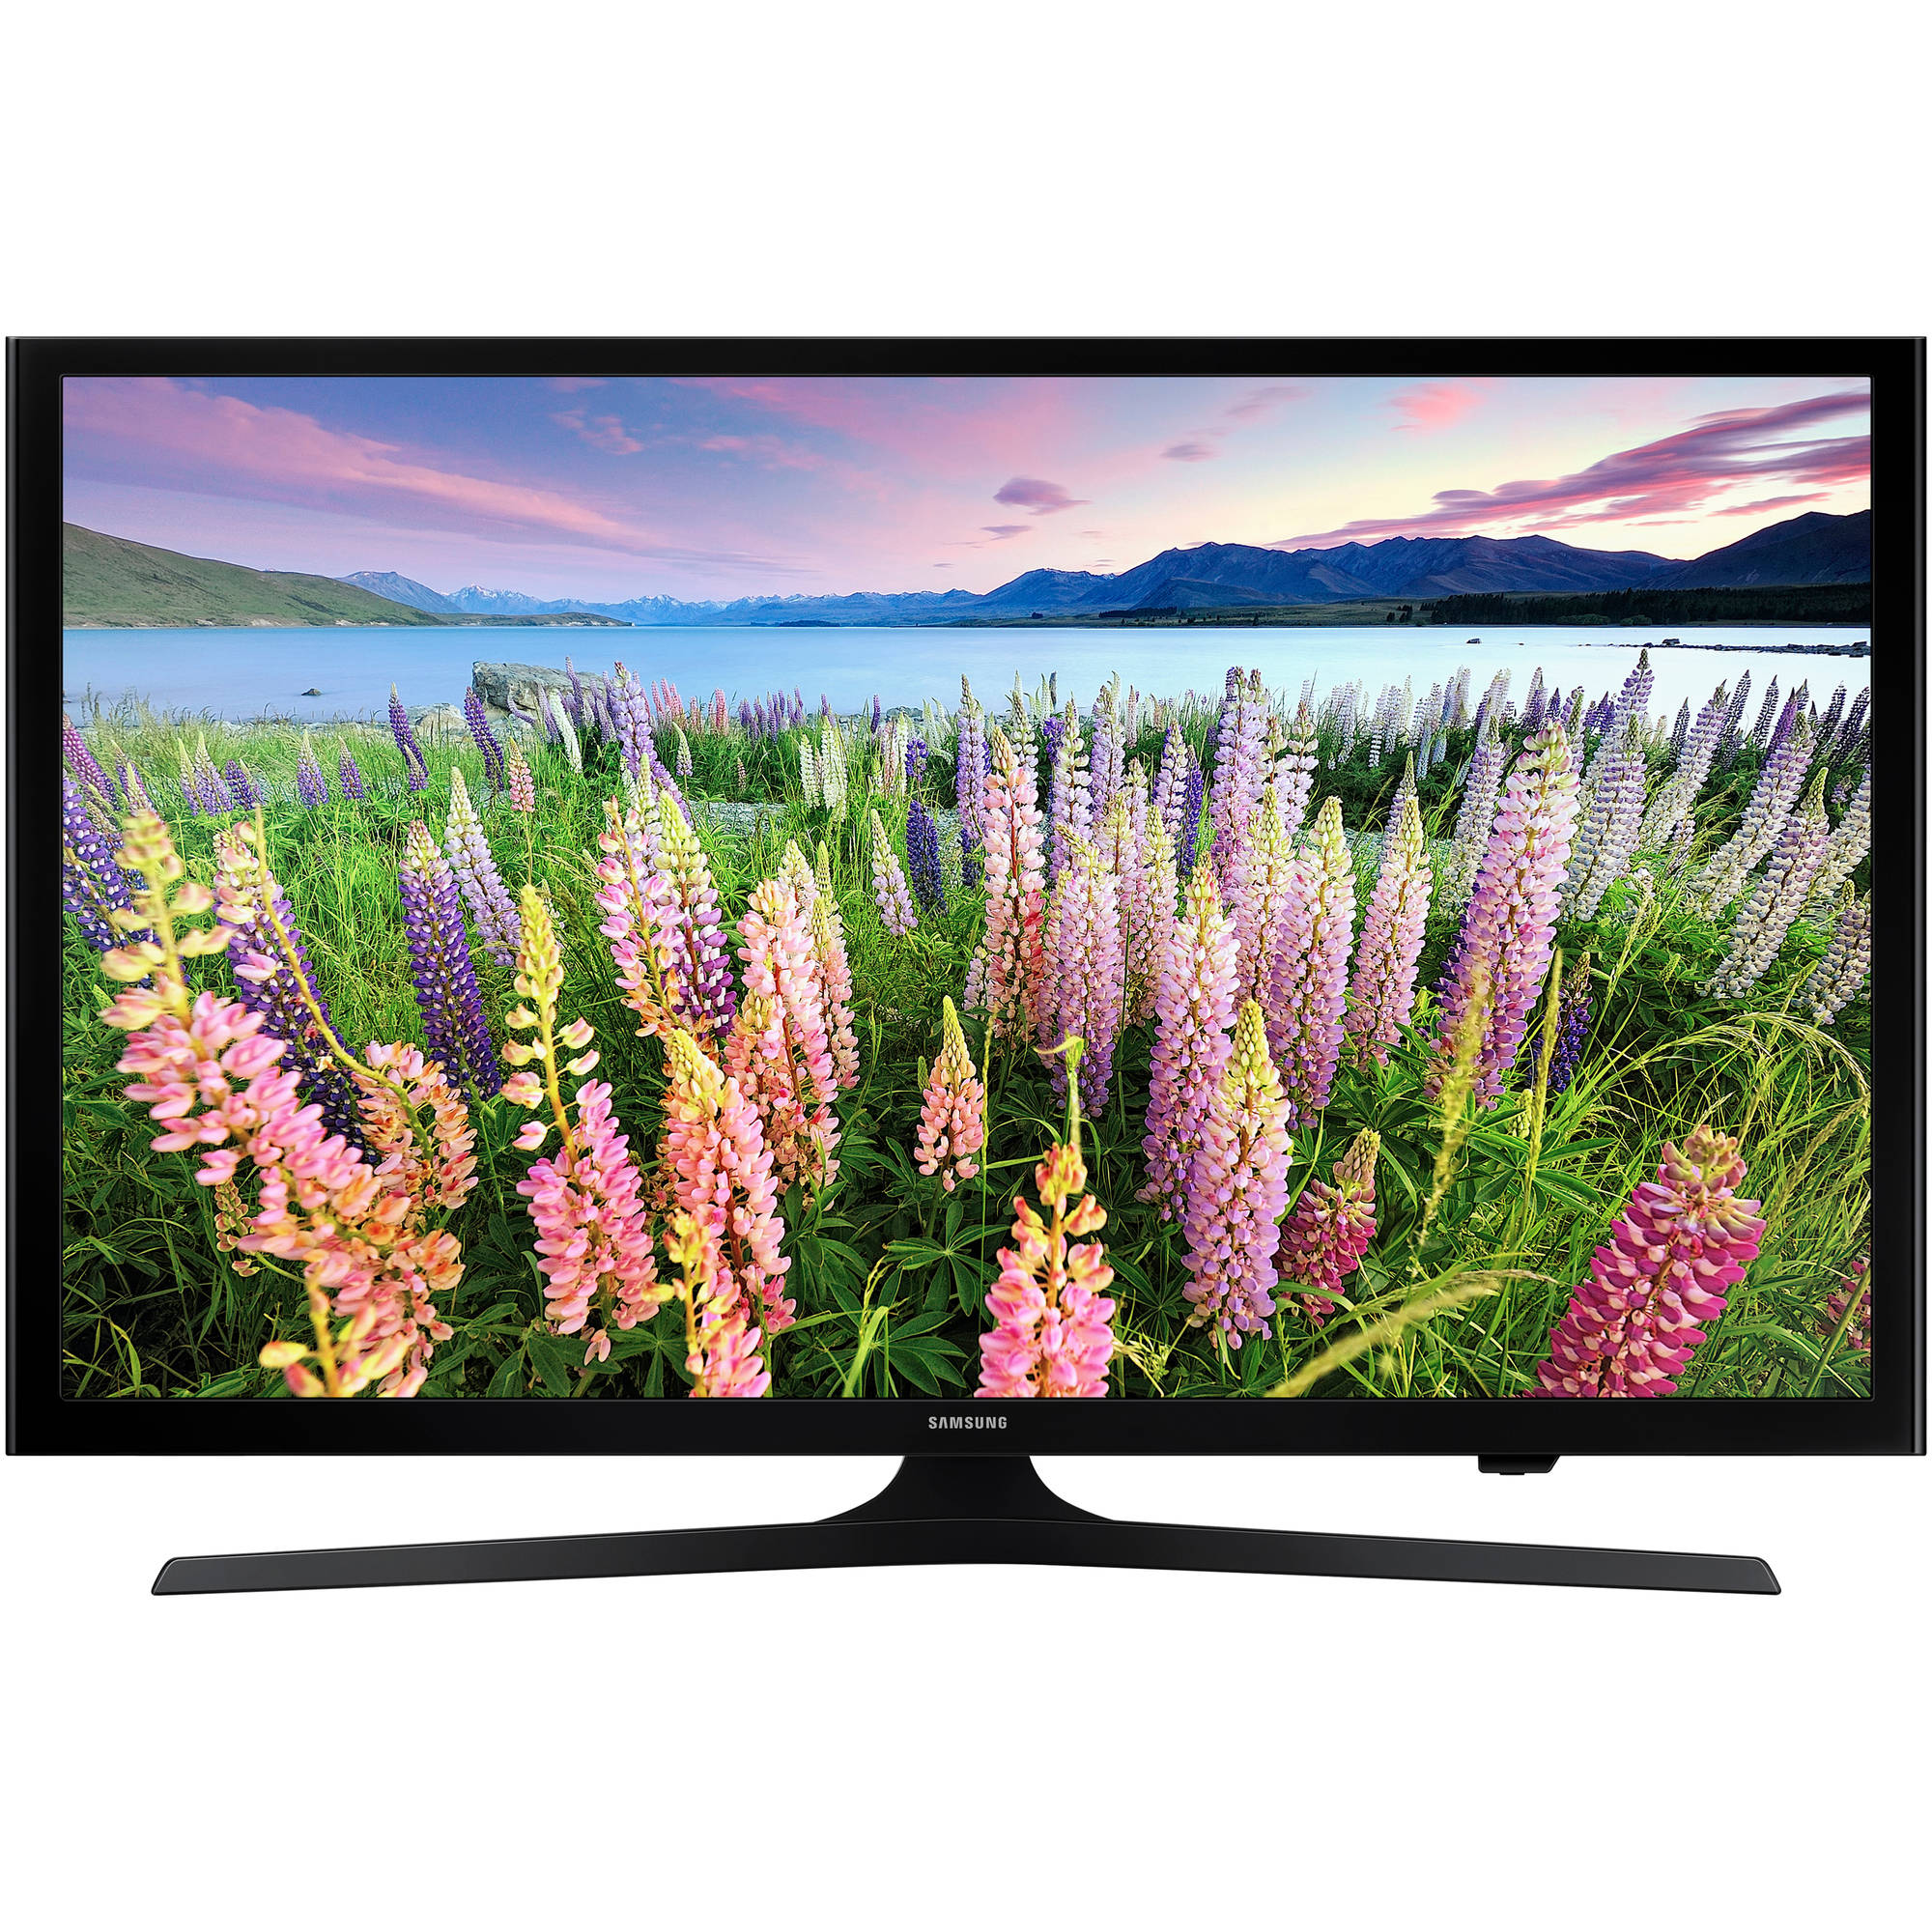 SAMSUNG 40" Class FHD (1080P) Smart LED TV (UN40J5200AF) - image 1 of 4